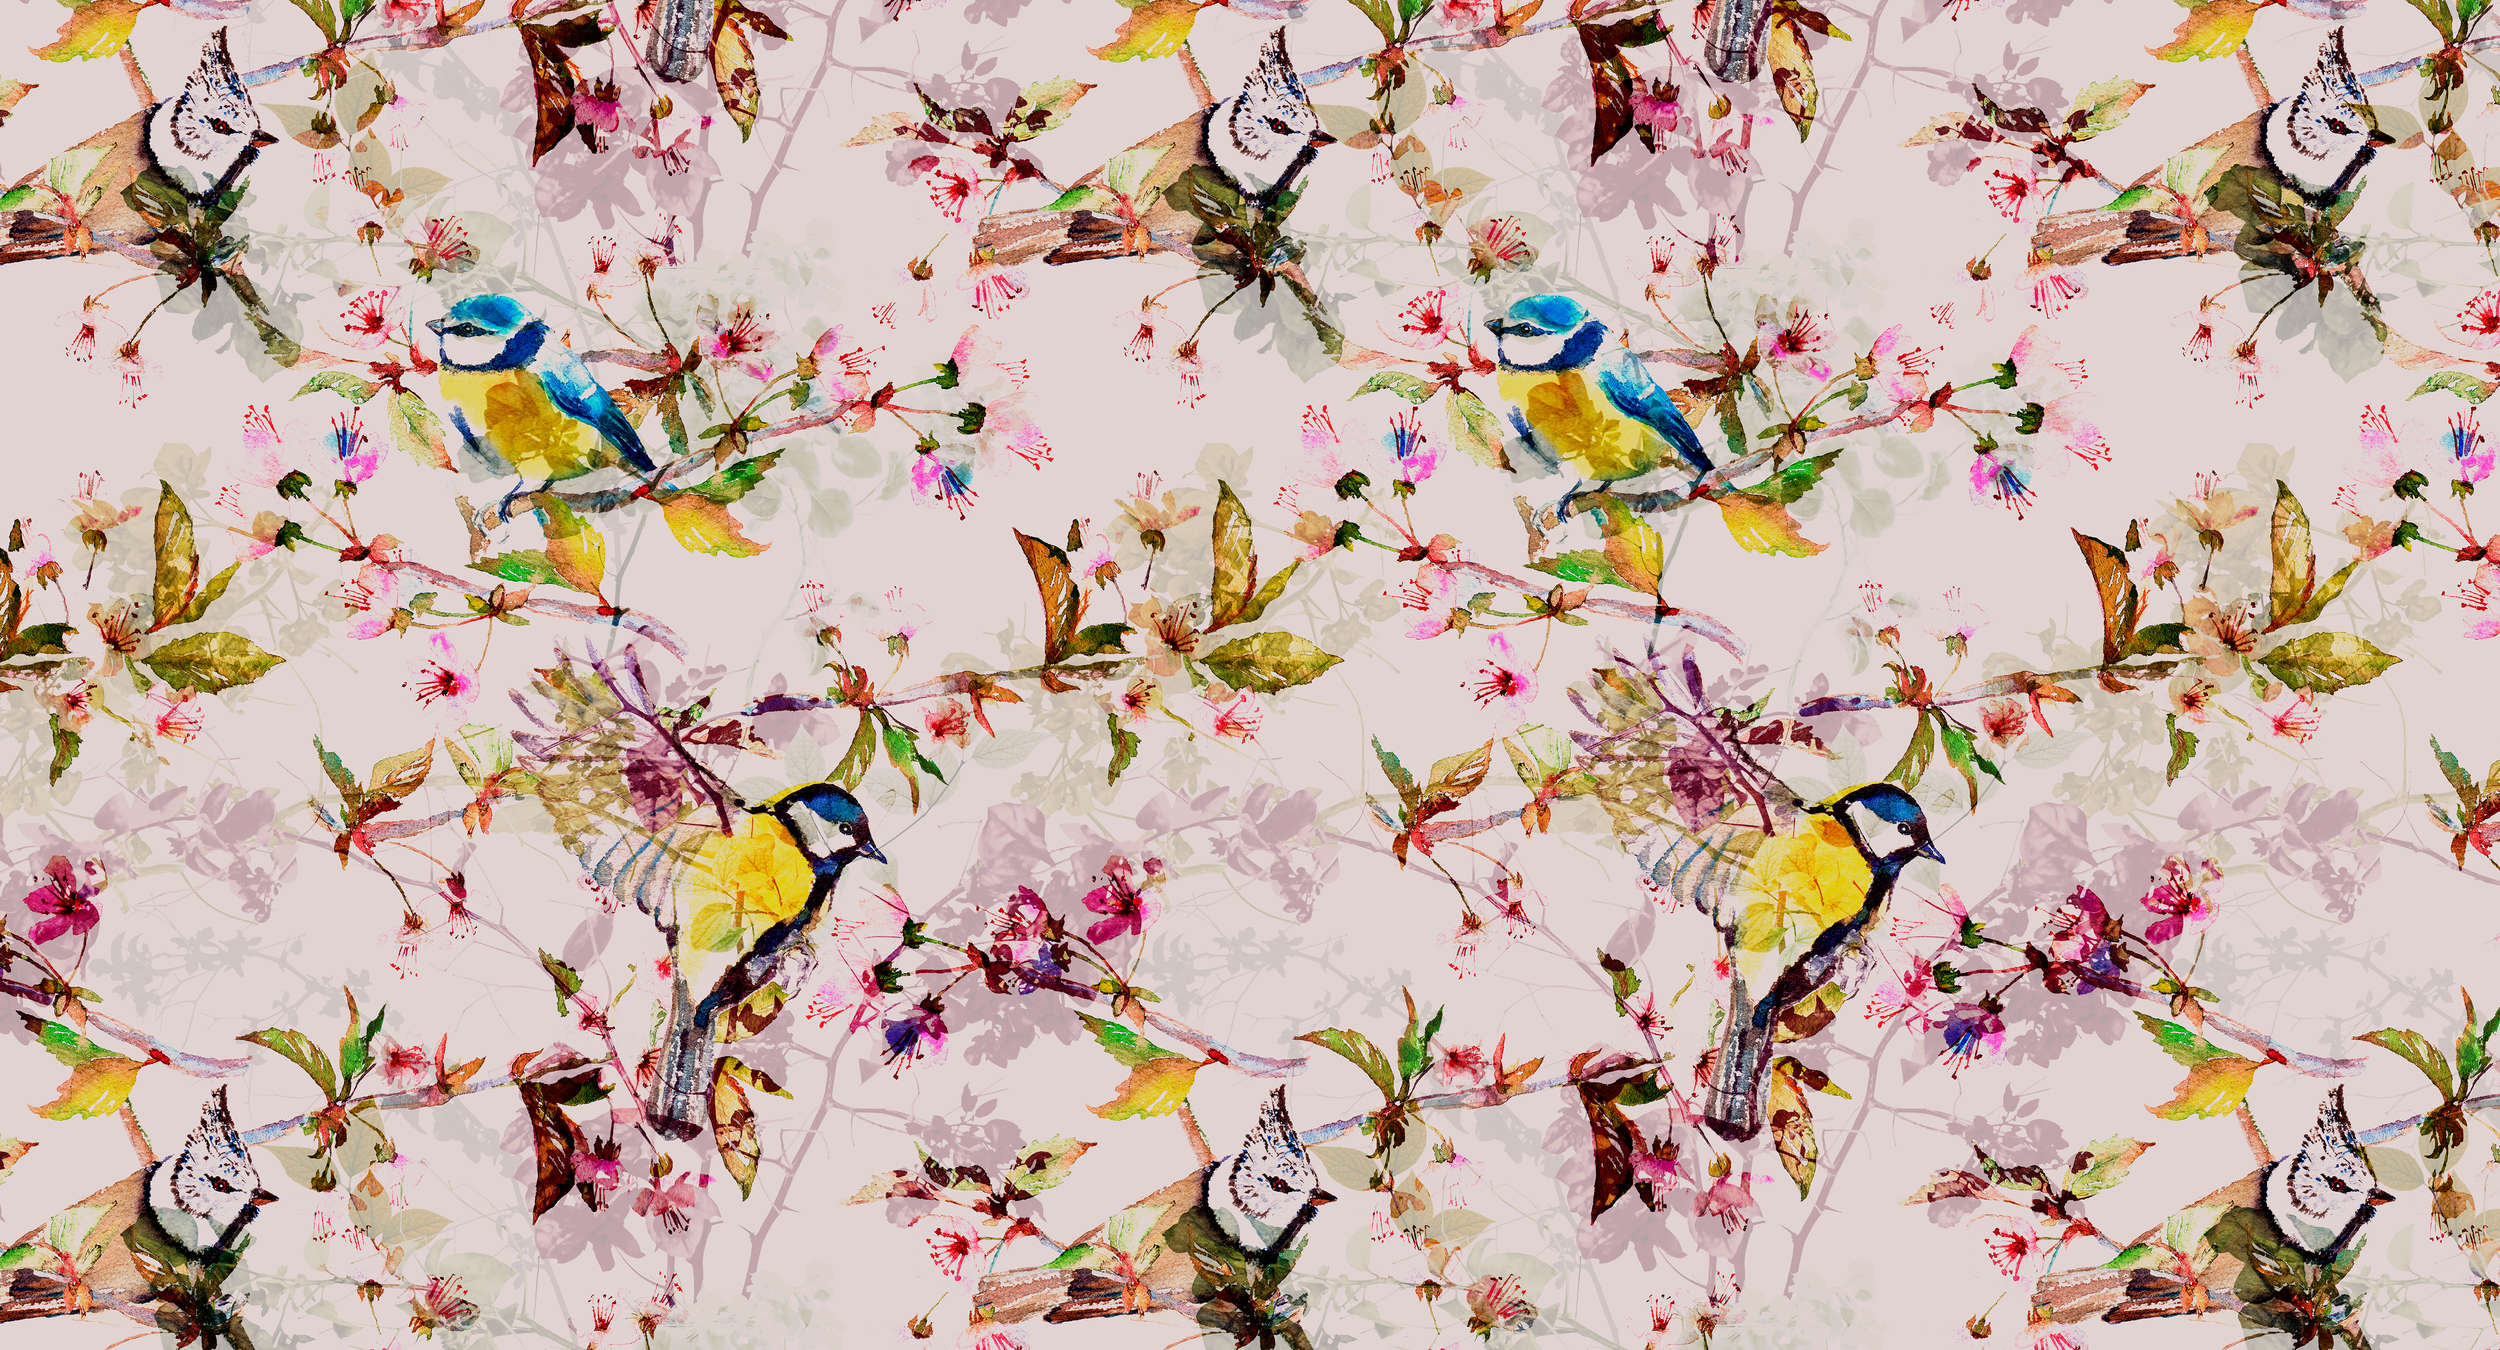             Carta da parati stile collage di uccelli - Rosa, giallo
        